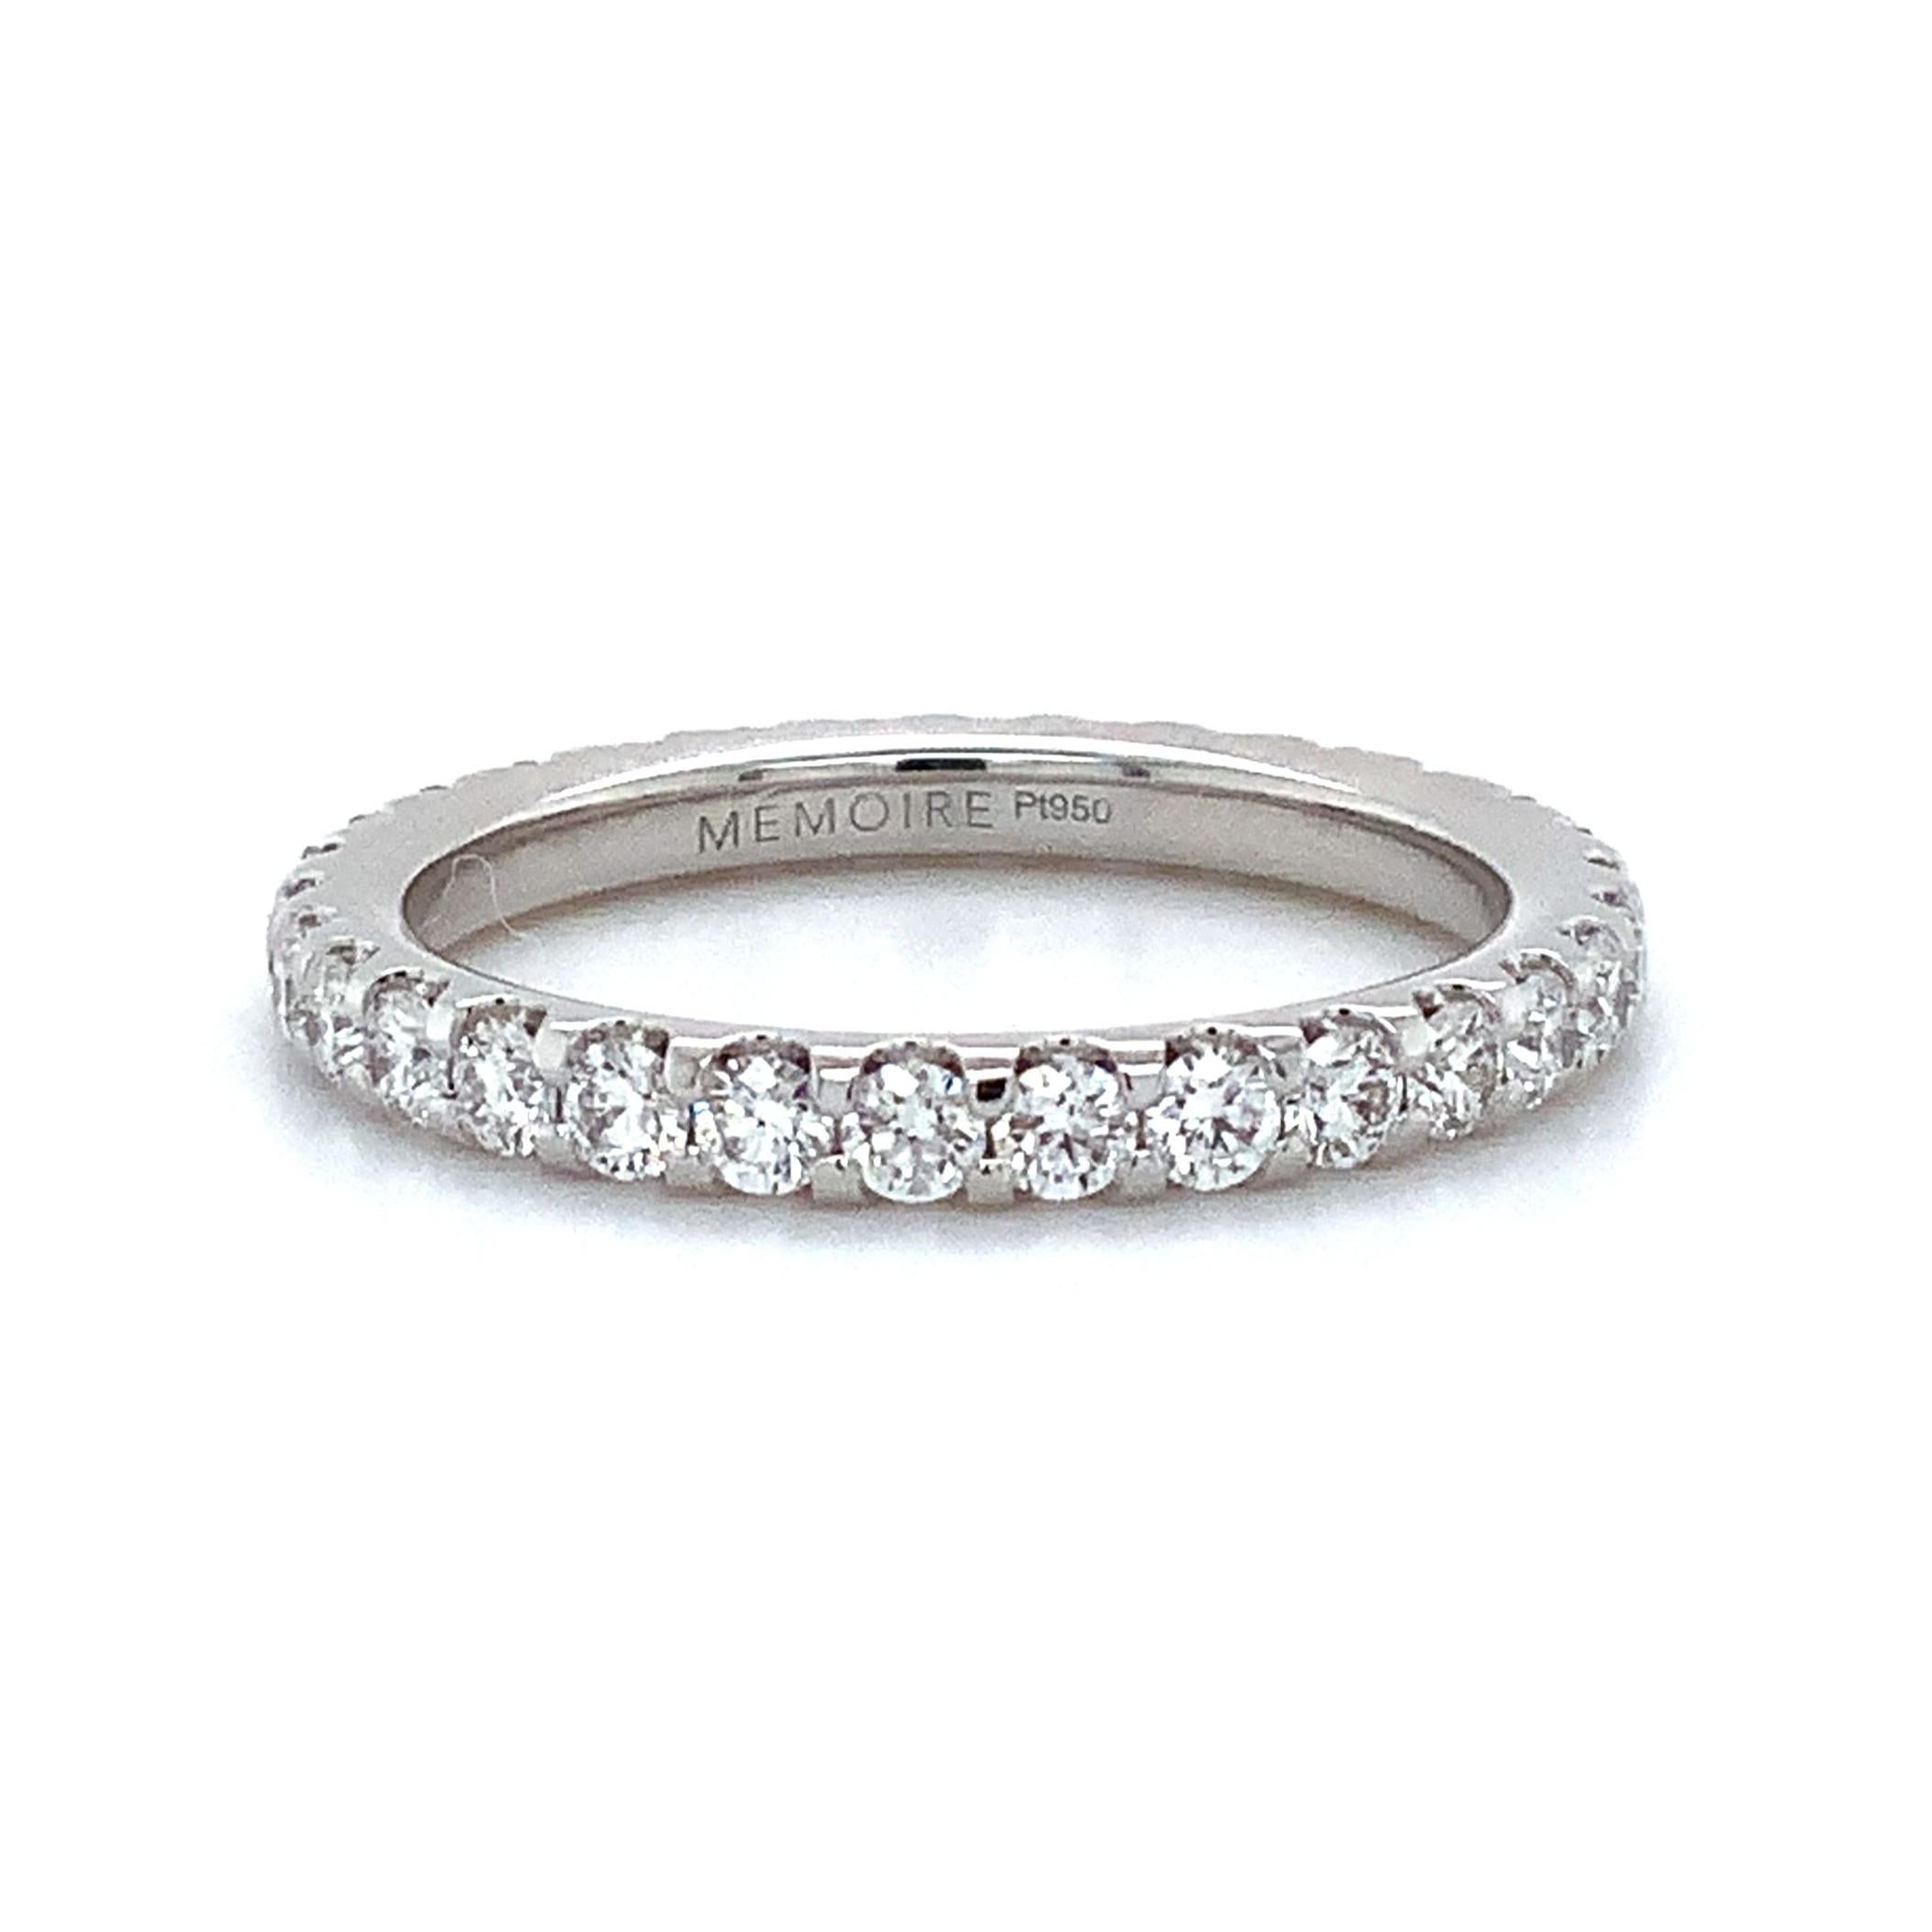 Das Memoire Odessa Collection Diamond Eternity Band Set aus Platin verfügt über 30 runde Diamanten im Brillantschliff von insgesamt 1,04ct. tw. Die Steine sind F Farbe mit VS1 Klarheit. Dieser Ring ist 2,45 mm breit und wiegt 3,6 Gramm; er ist in